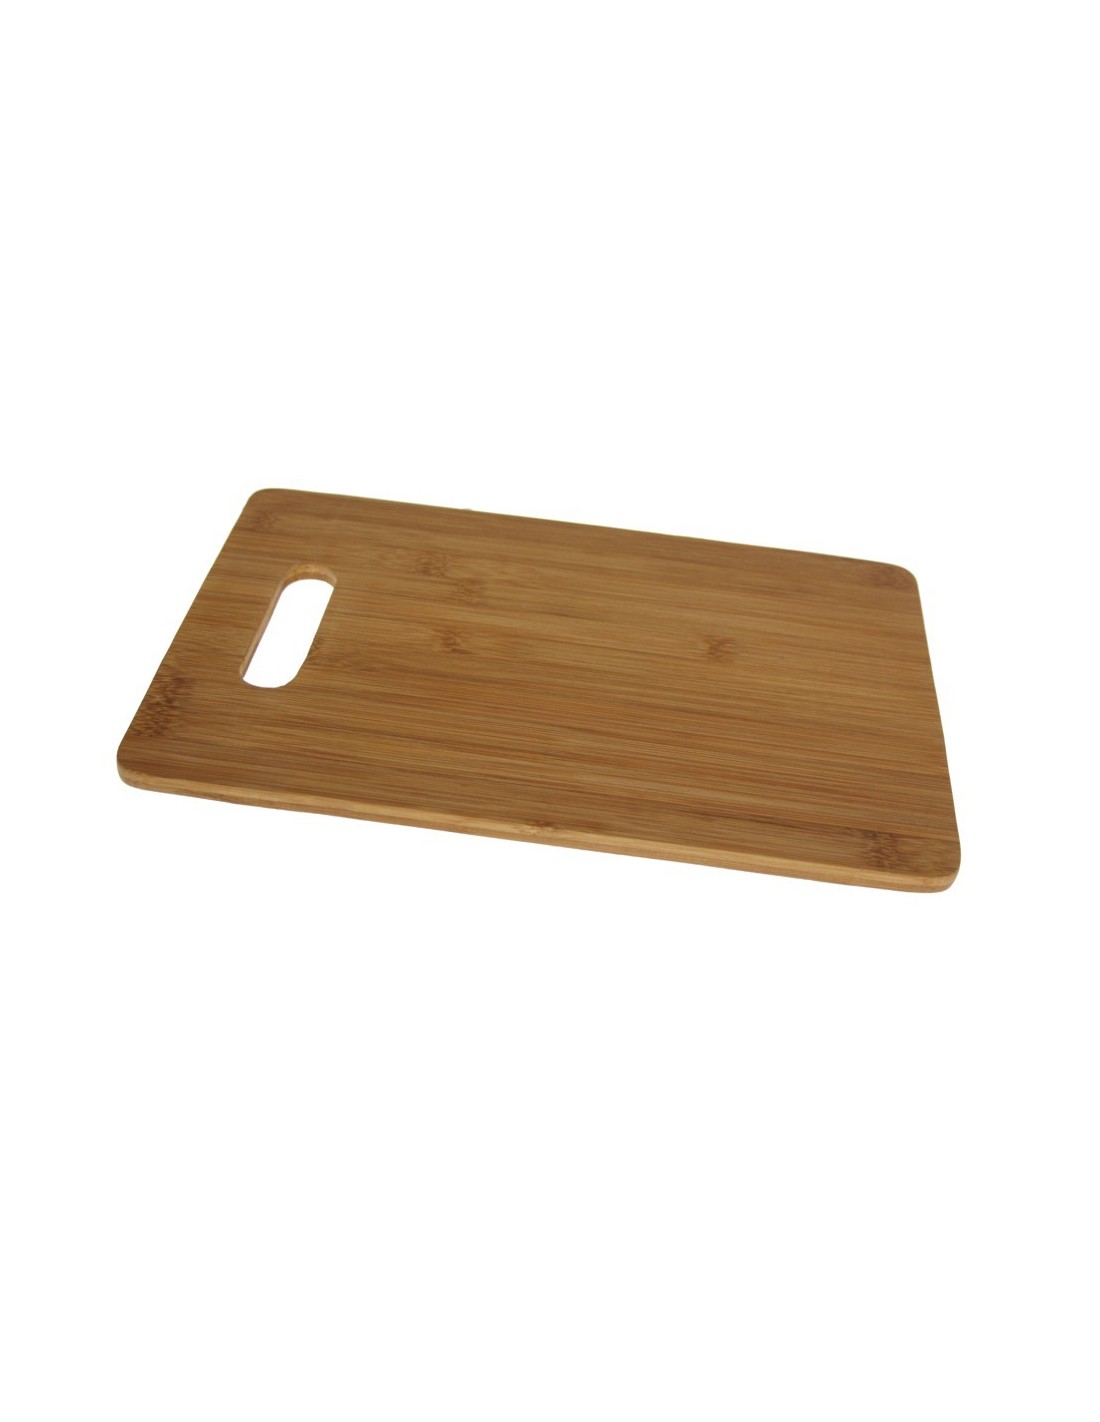 Tabla de corte madera de bambú